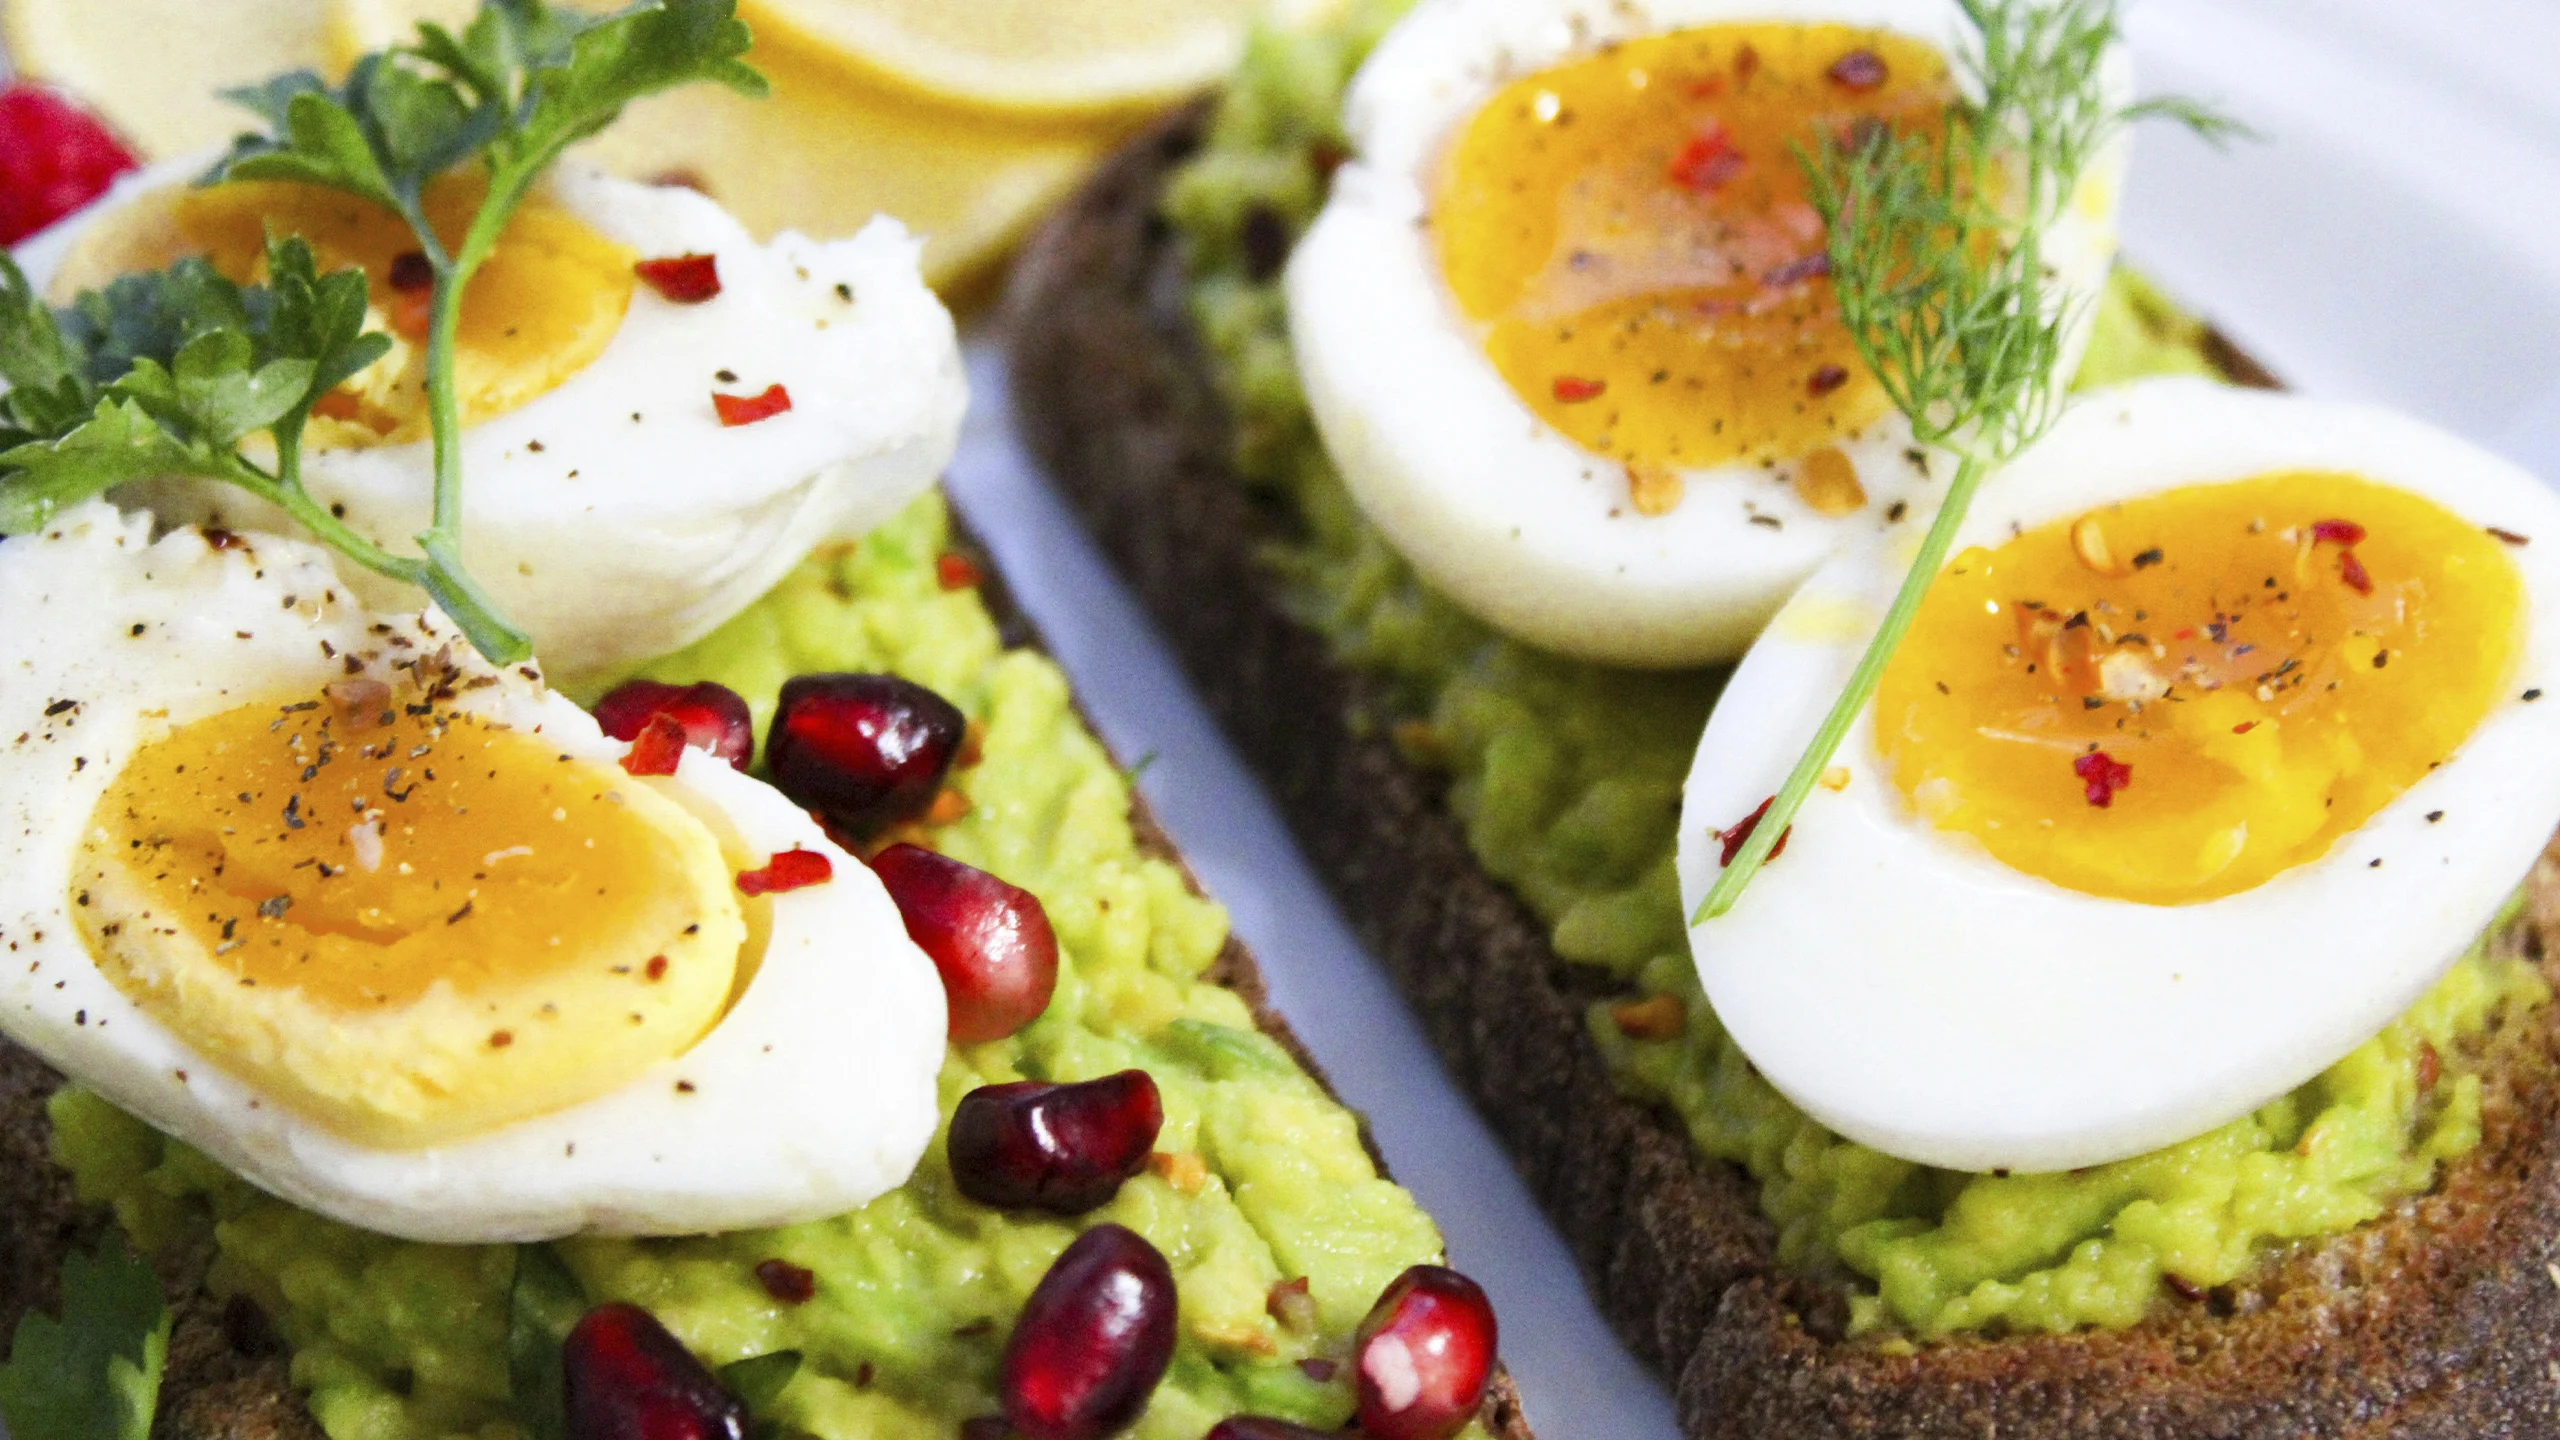 Cuáles son los beneficios de comer huevos: ¿aumentan el colesterol?